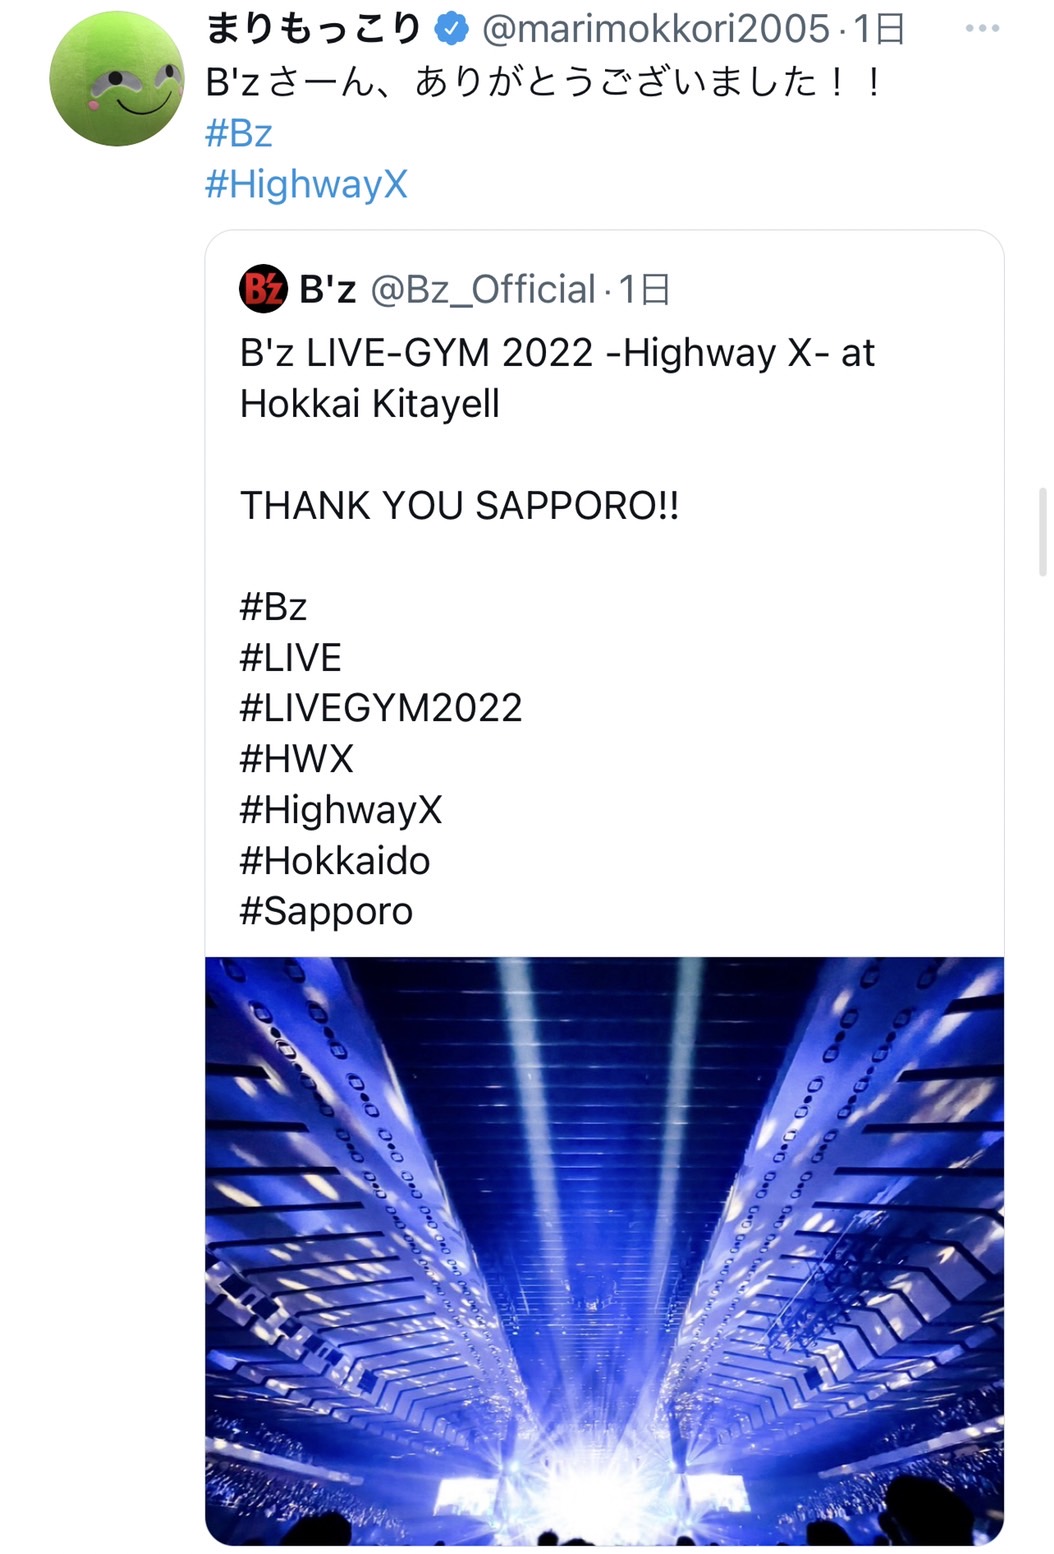 まりもっこりが『B'z LIVE-GYM 2022 -Highway X-』に関する公式投稿を引用して謝意を伝えたツイートのキャプチャ画像